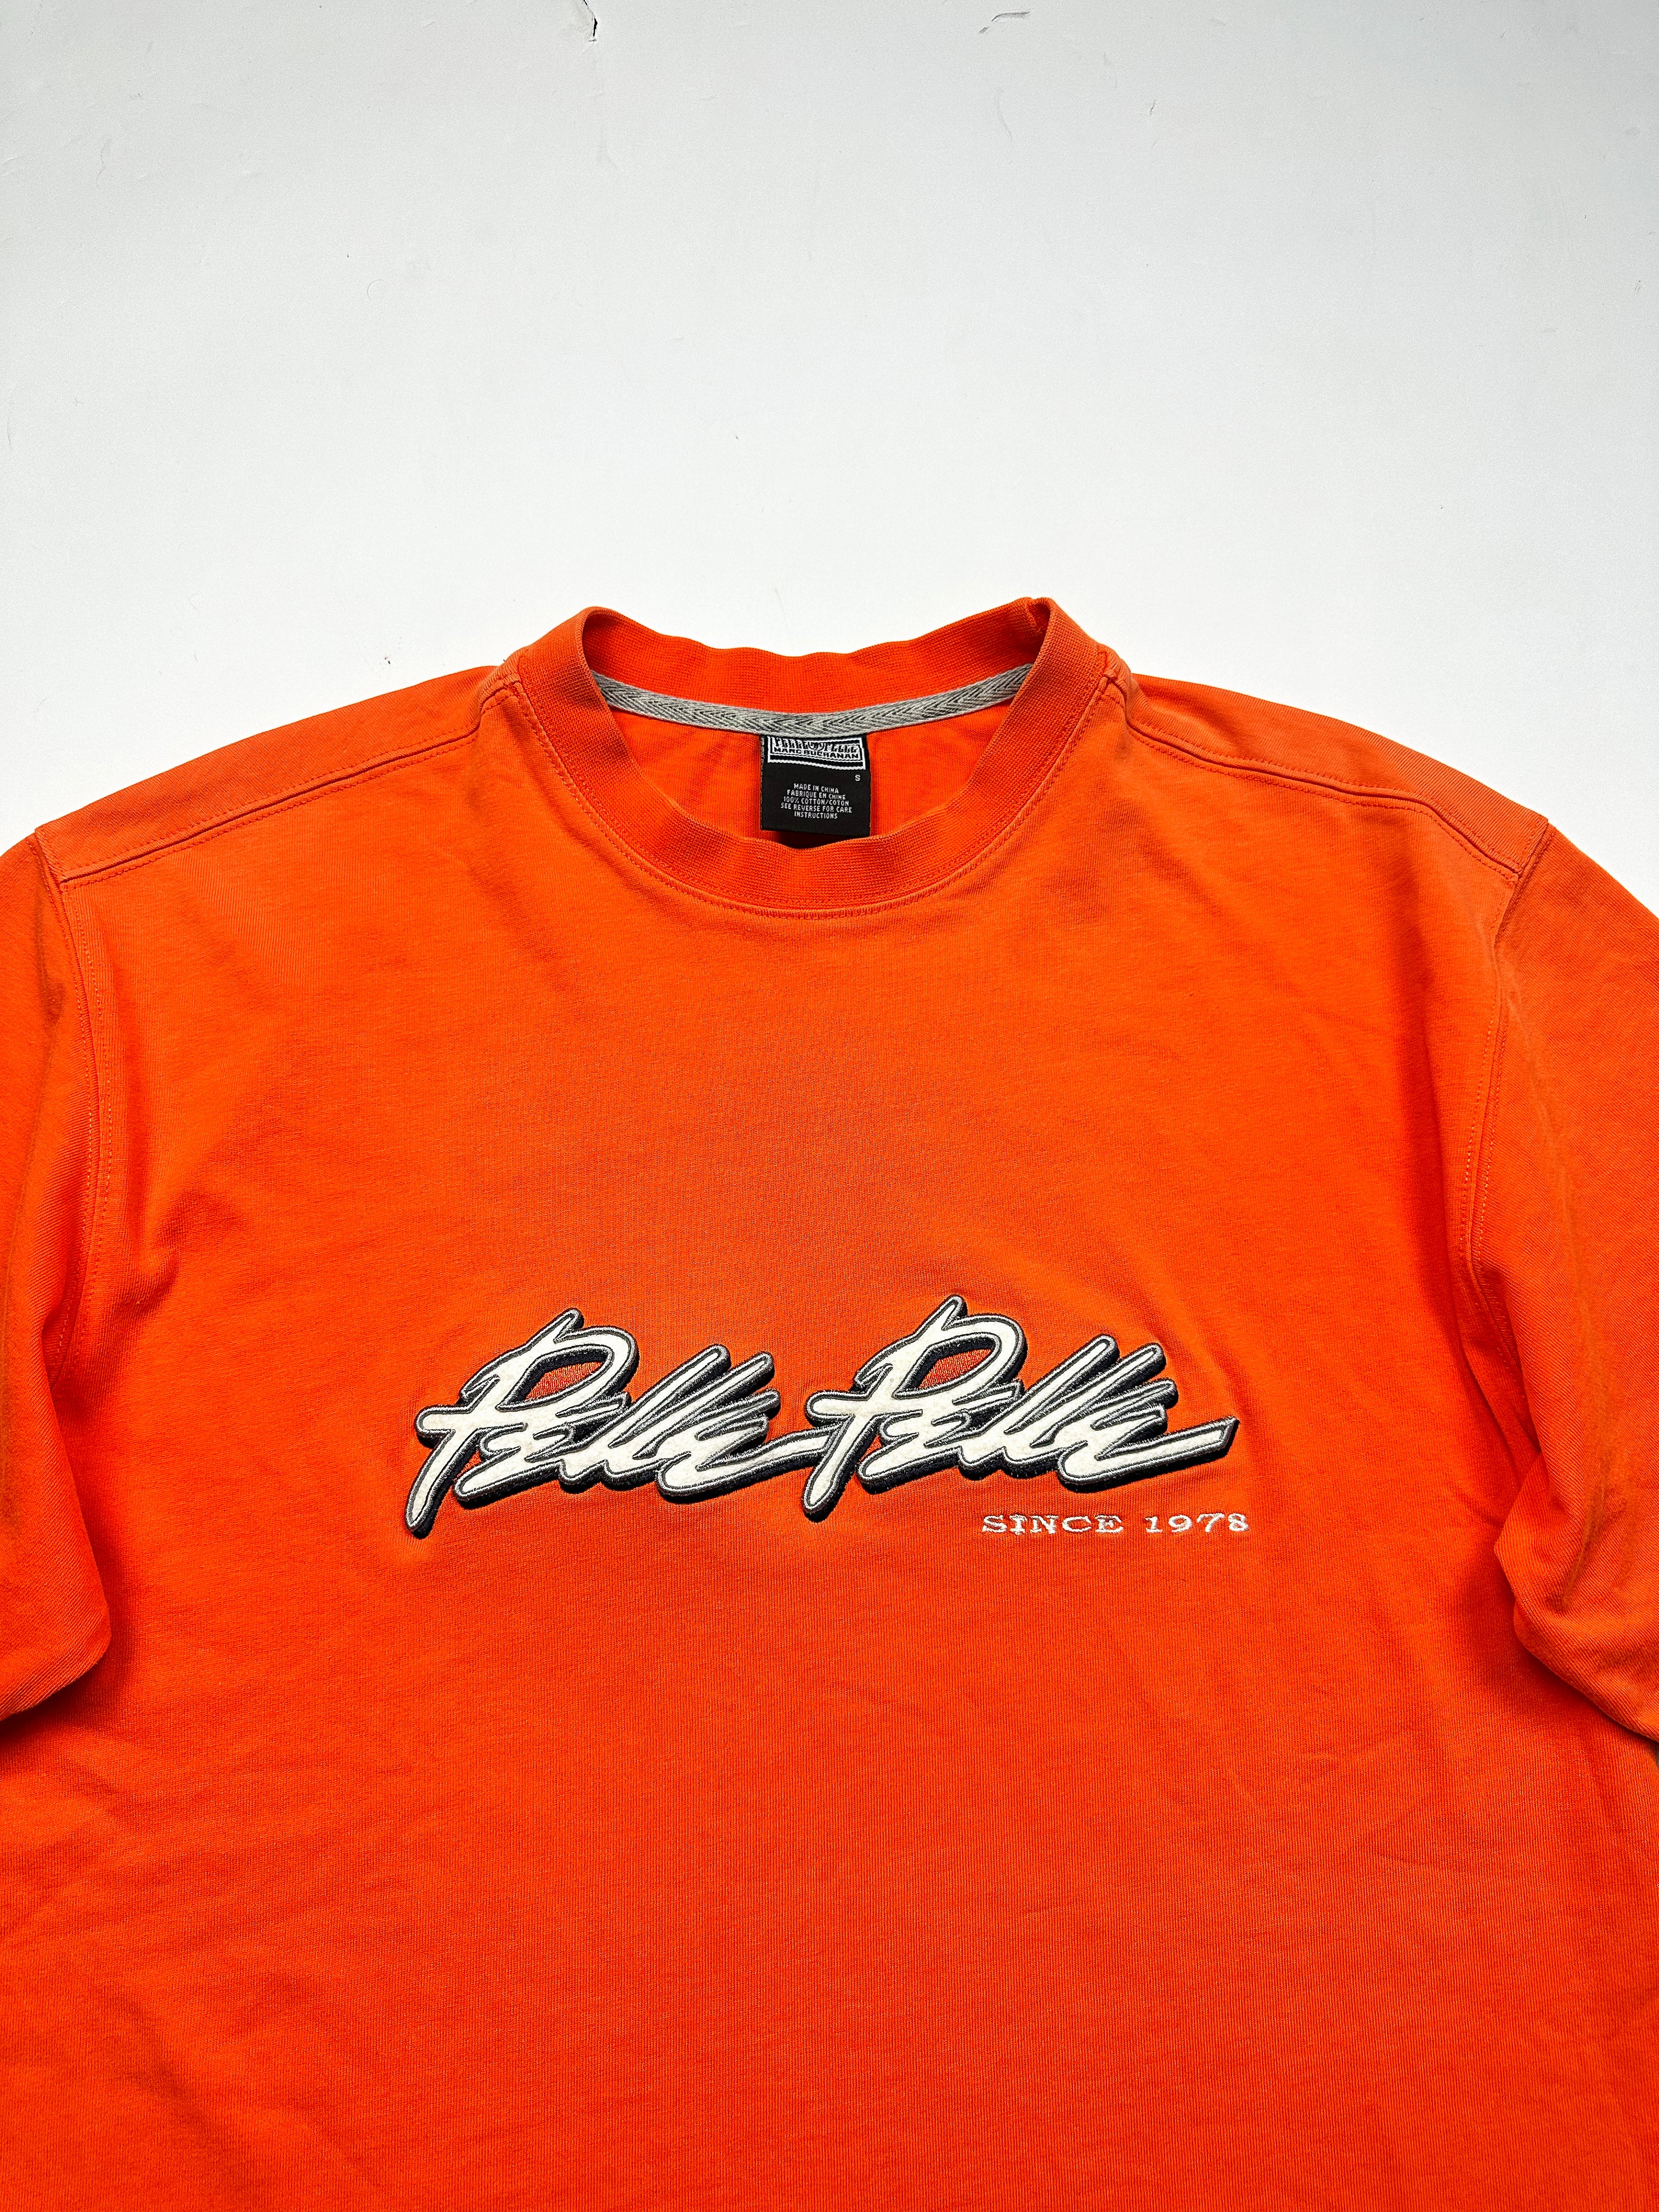 Pelle Pelle Orange Spell Out T-shirt 90's